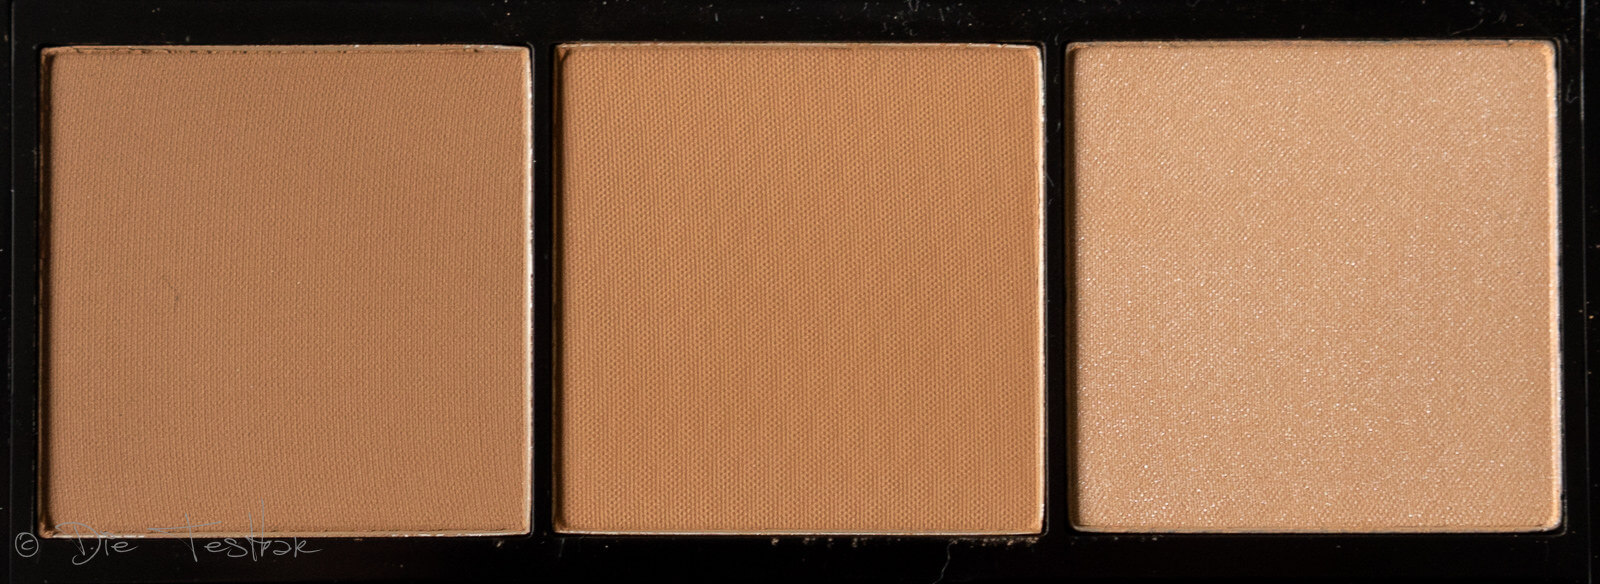 Face-, Bronze-, Blush- und Glow Paletten von Artdeco 45